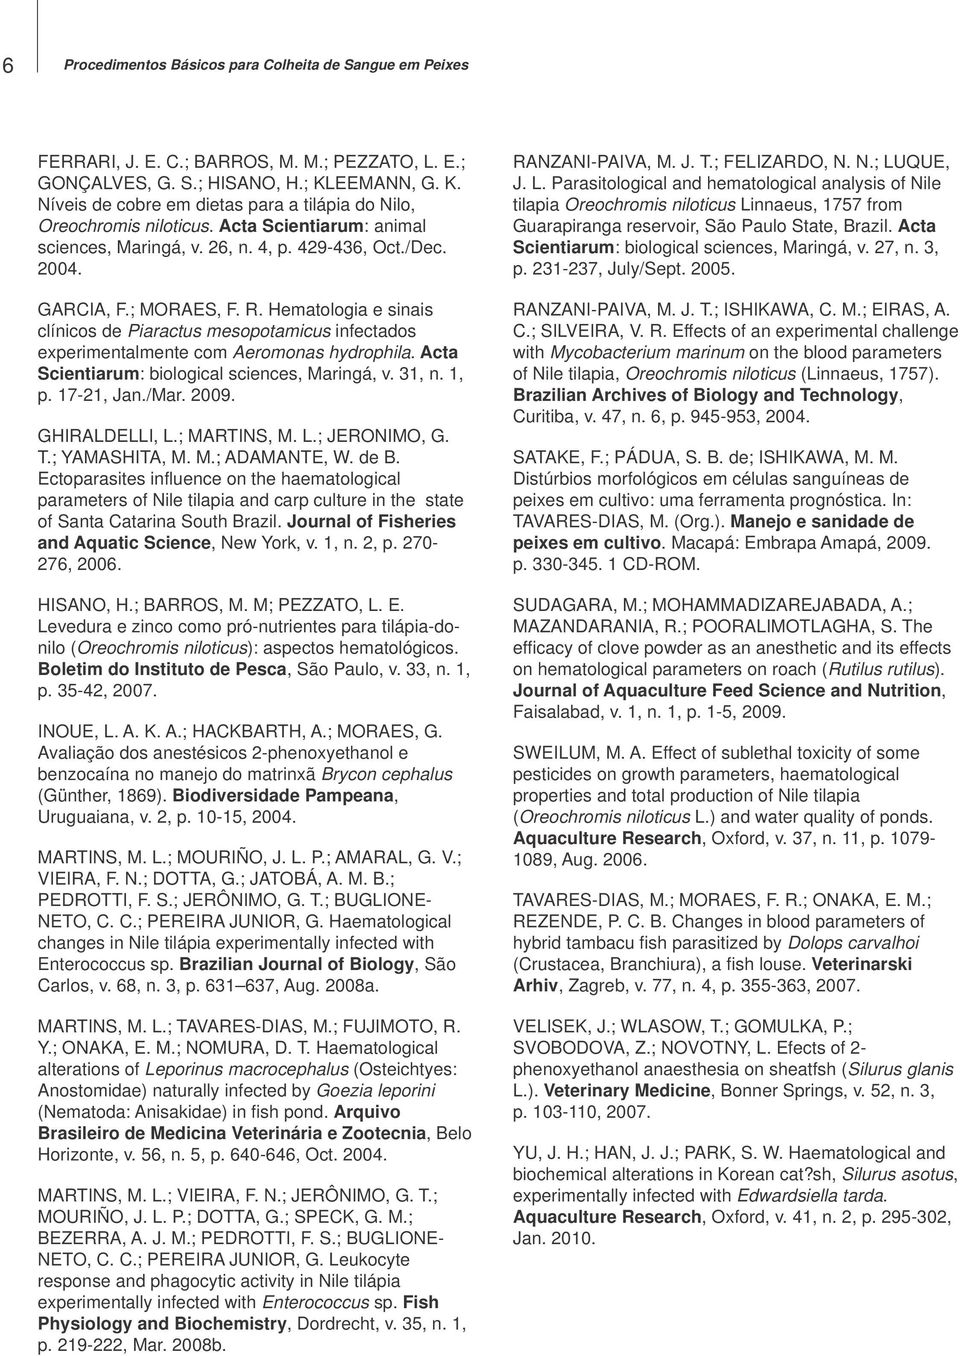 Hematologia e sinais clínicos de Piaractus mesopotamicus infectados experimentalmente com Aeromonas hydrophila. Acta Scientiarum: biological sciences, Maringá, v. 31, n. 1, p. 17-21, Jan./Mar. 2009.